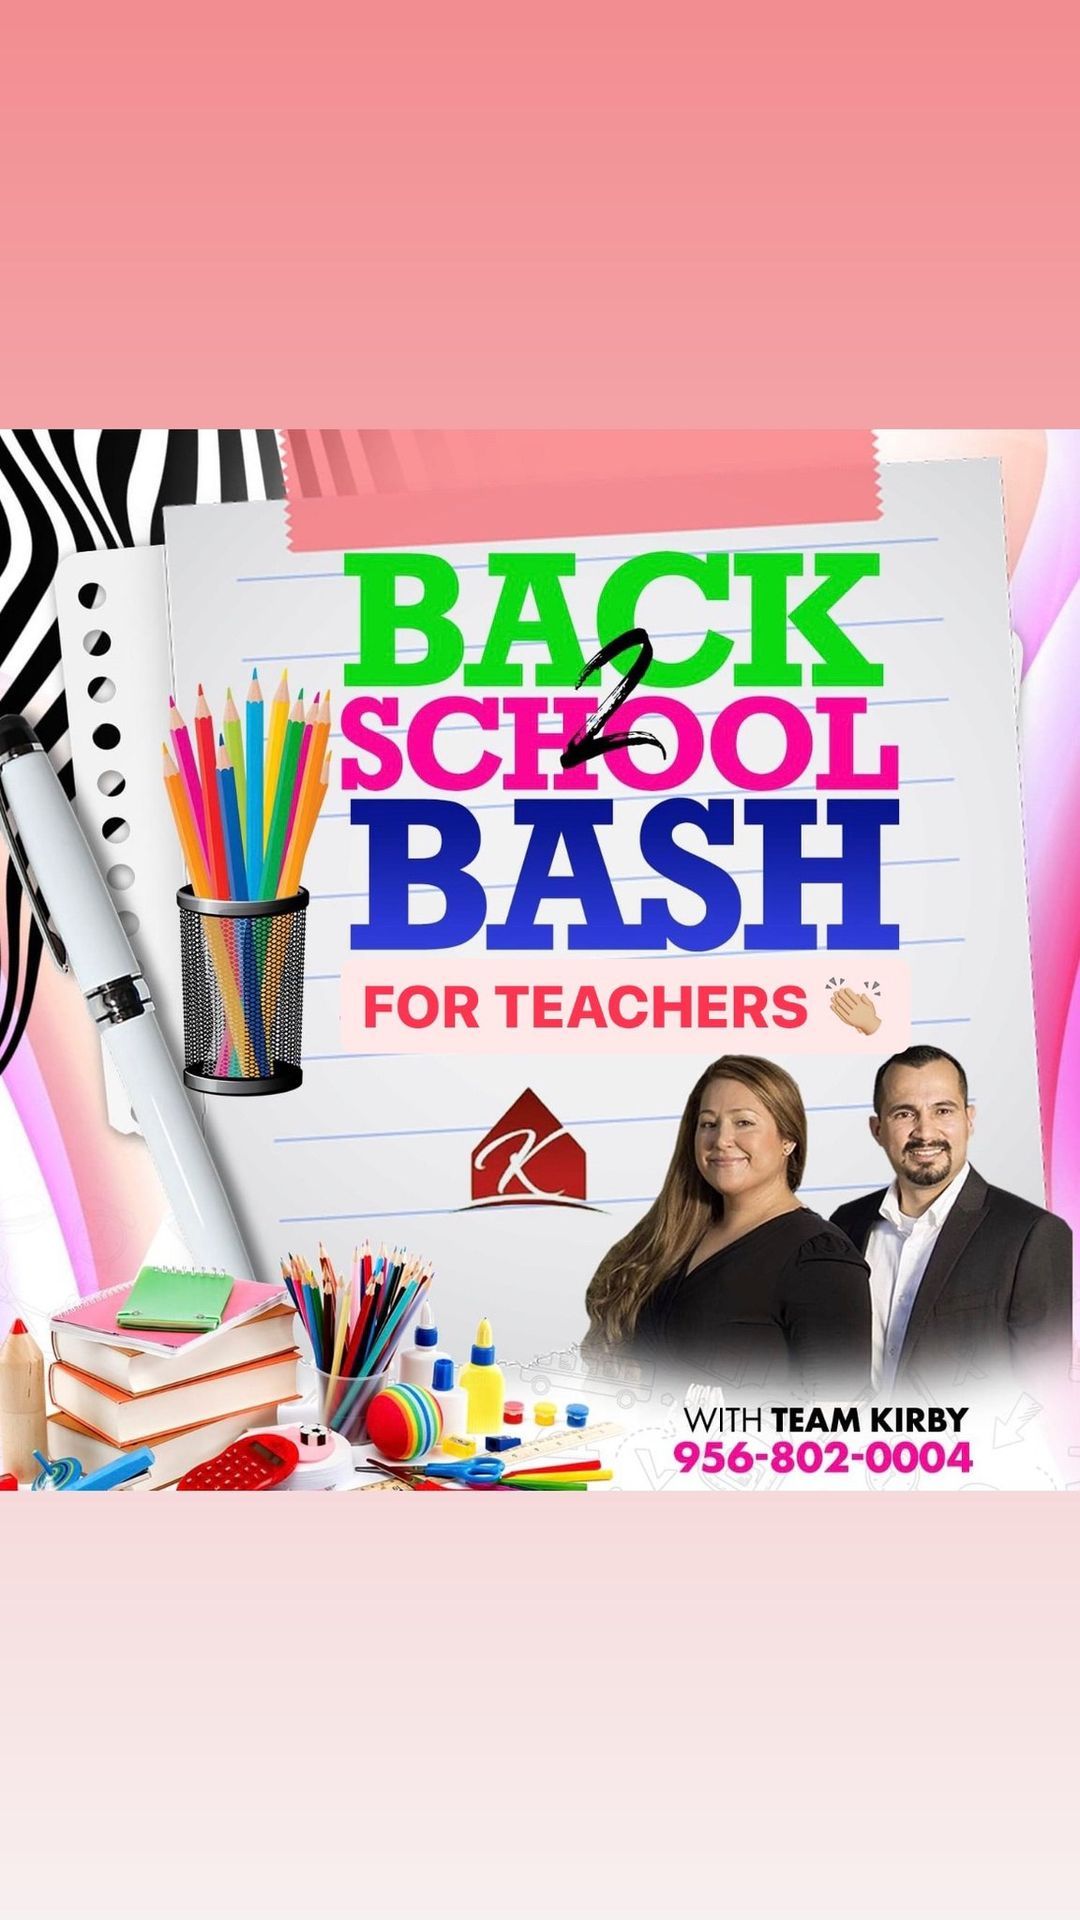 Back 2 School Bash for TEACHERS!